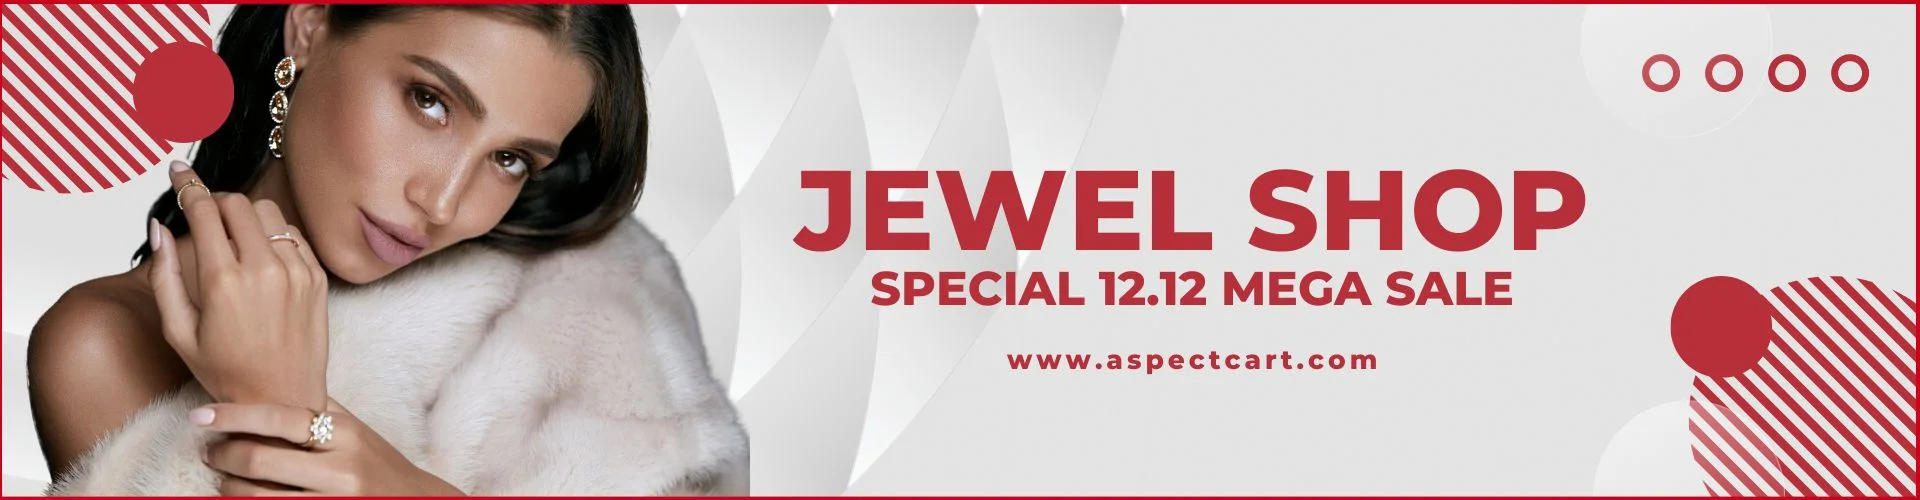 Banner dat de sieradencollectie adverteert bij een online juwelierswinkel